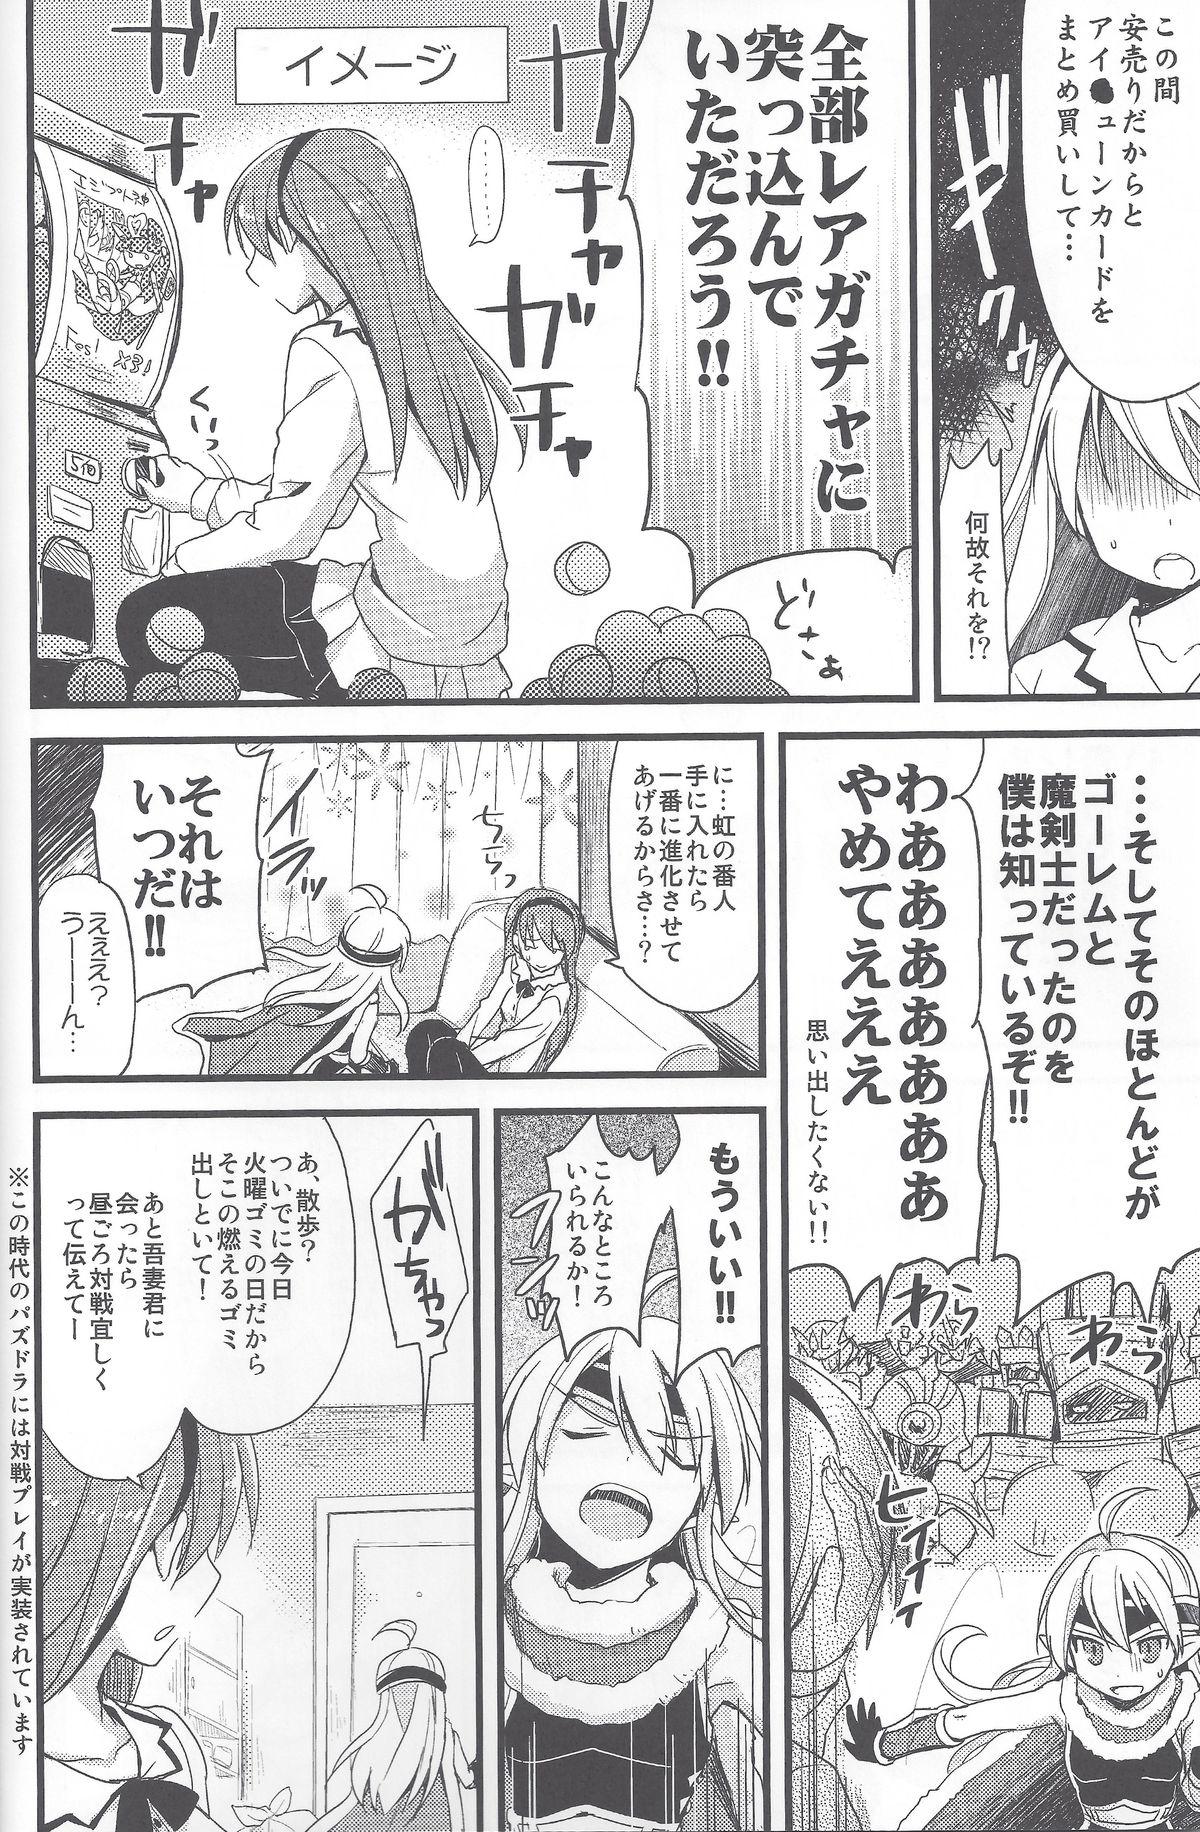 Young Men PuzDra Haikakin User-sama ni Banzai 2 Jab Me - Puzzle and dragons Amateursex - Page 7